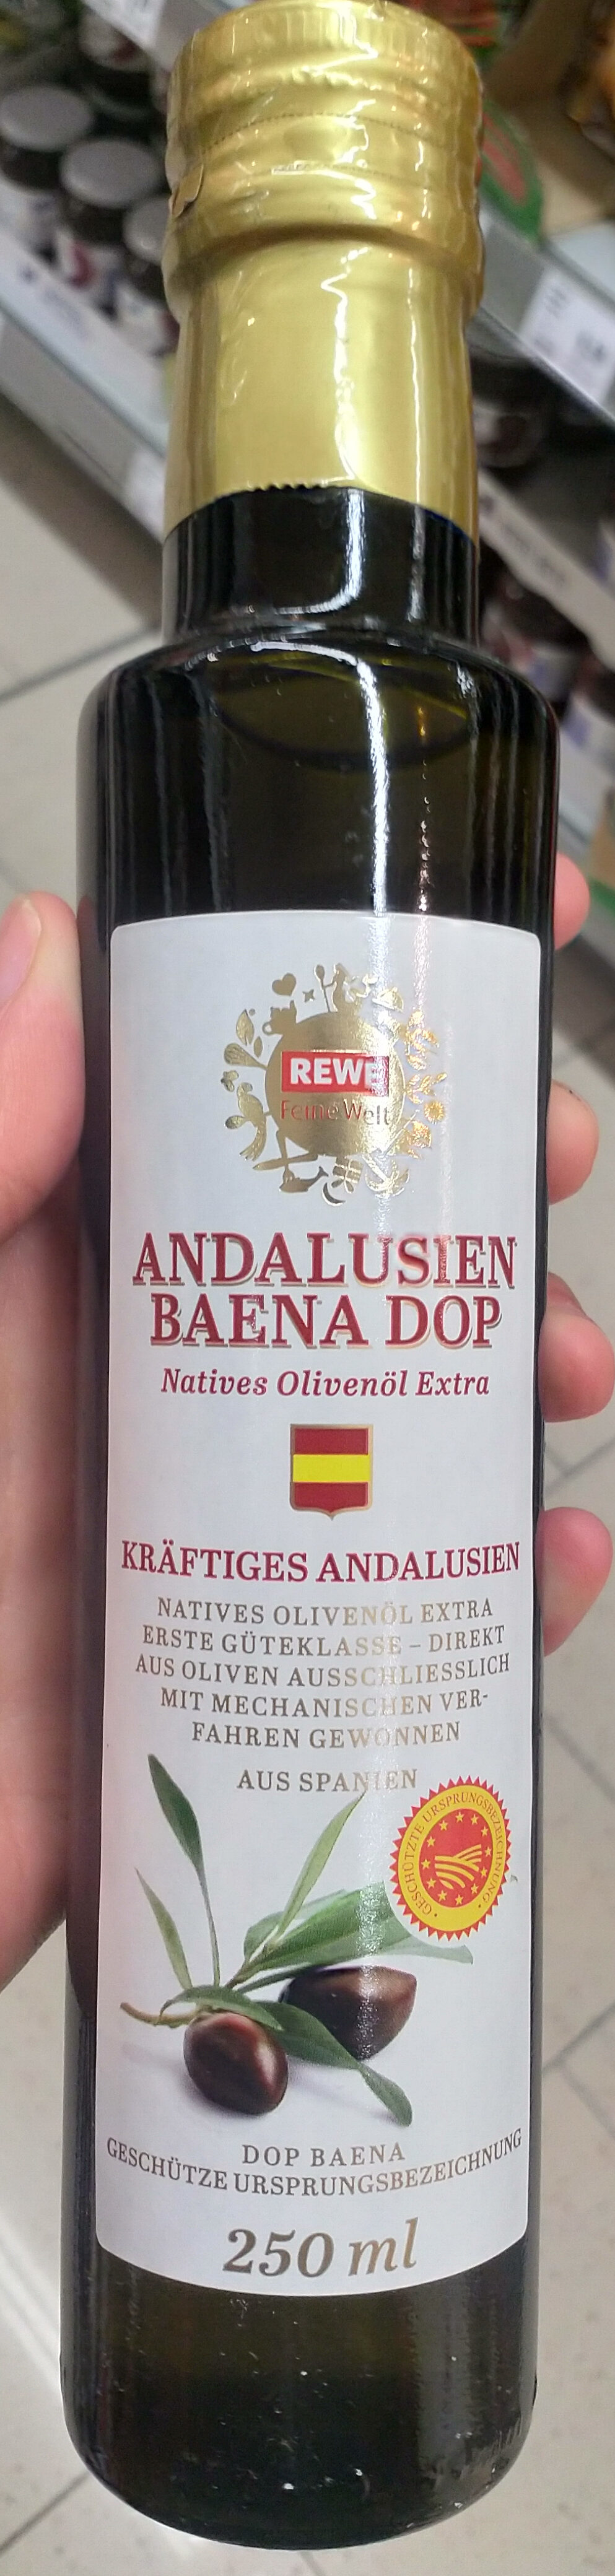 Andalusien Baena DOP - Produkt